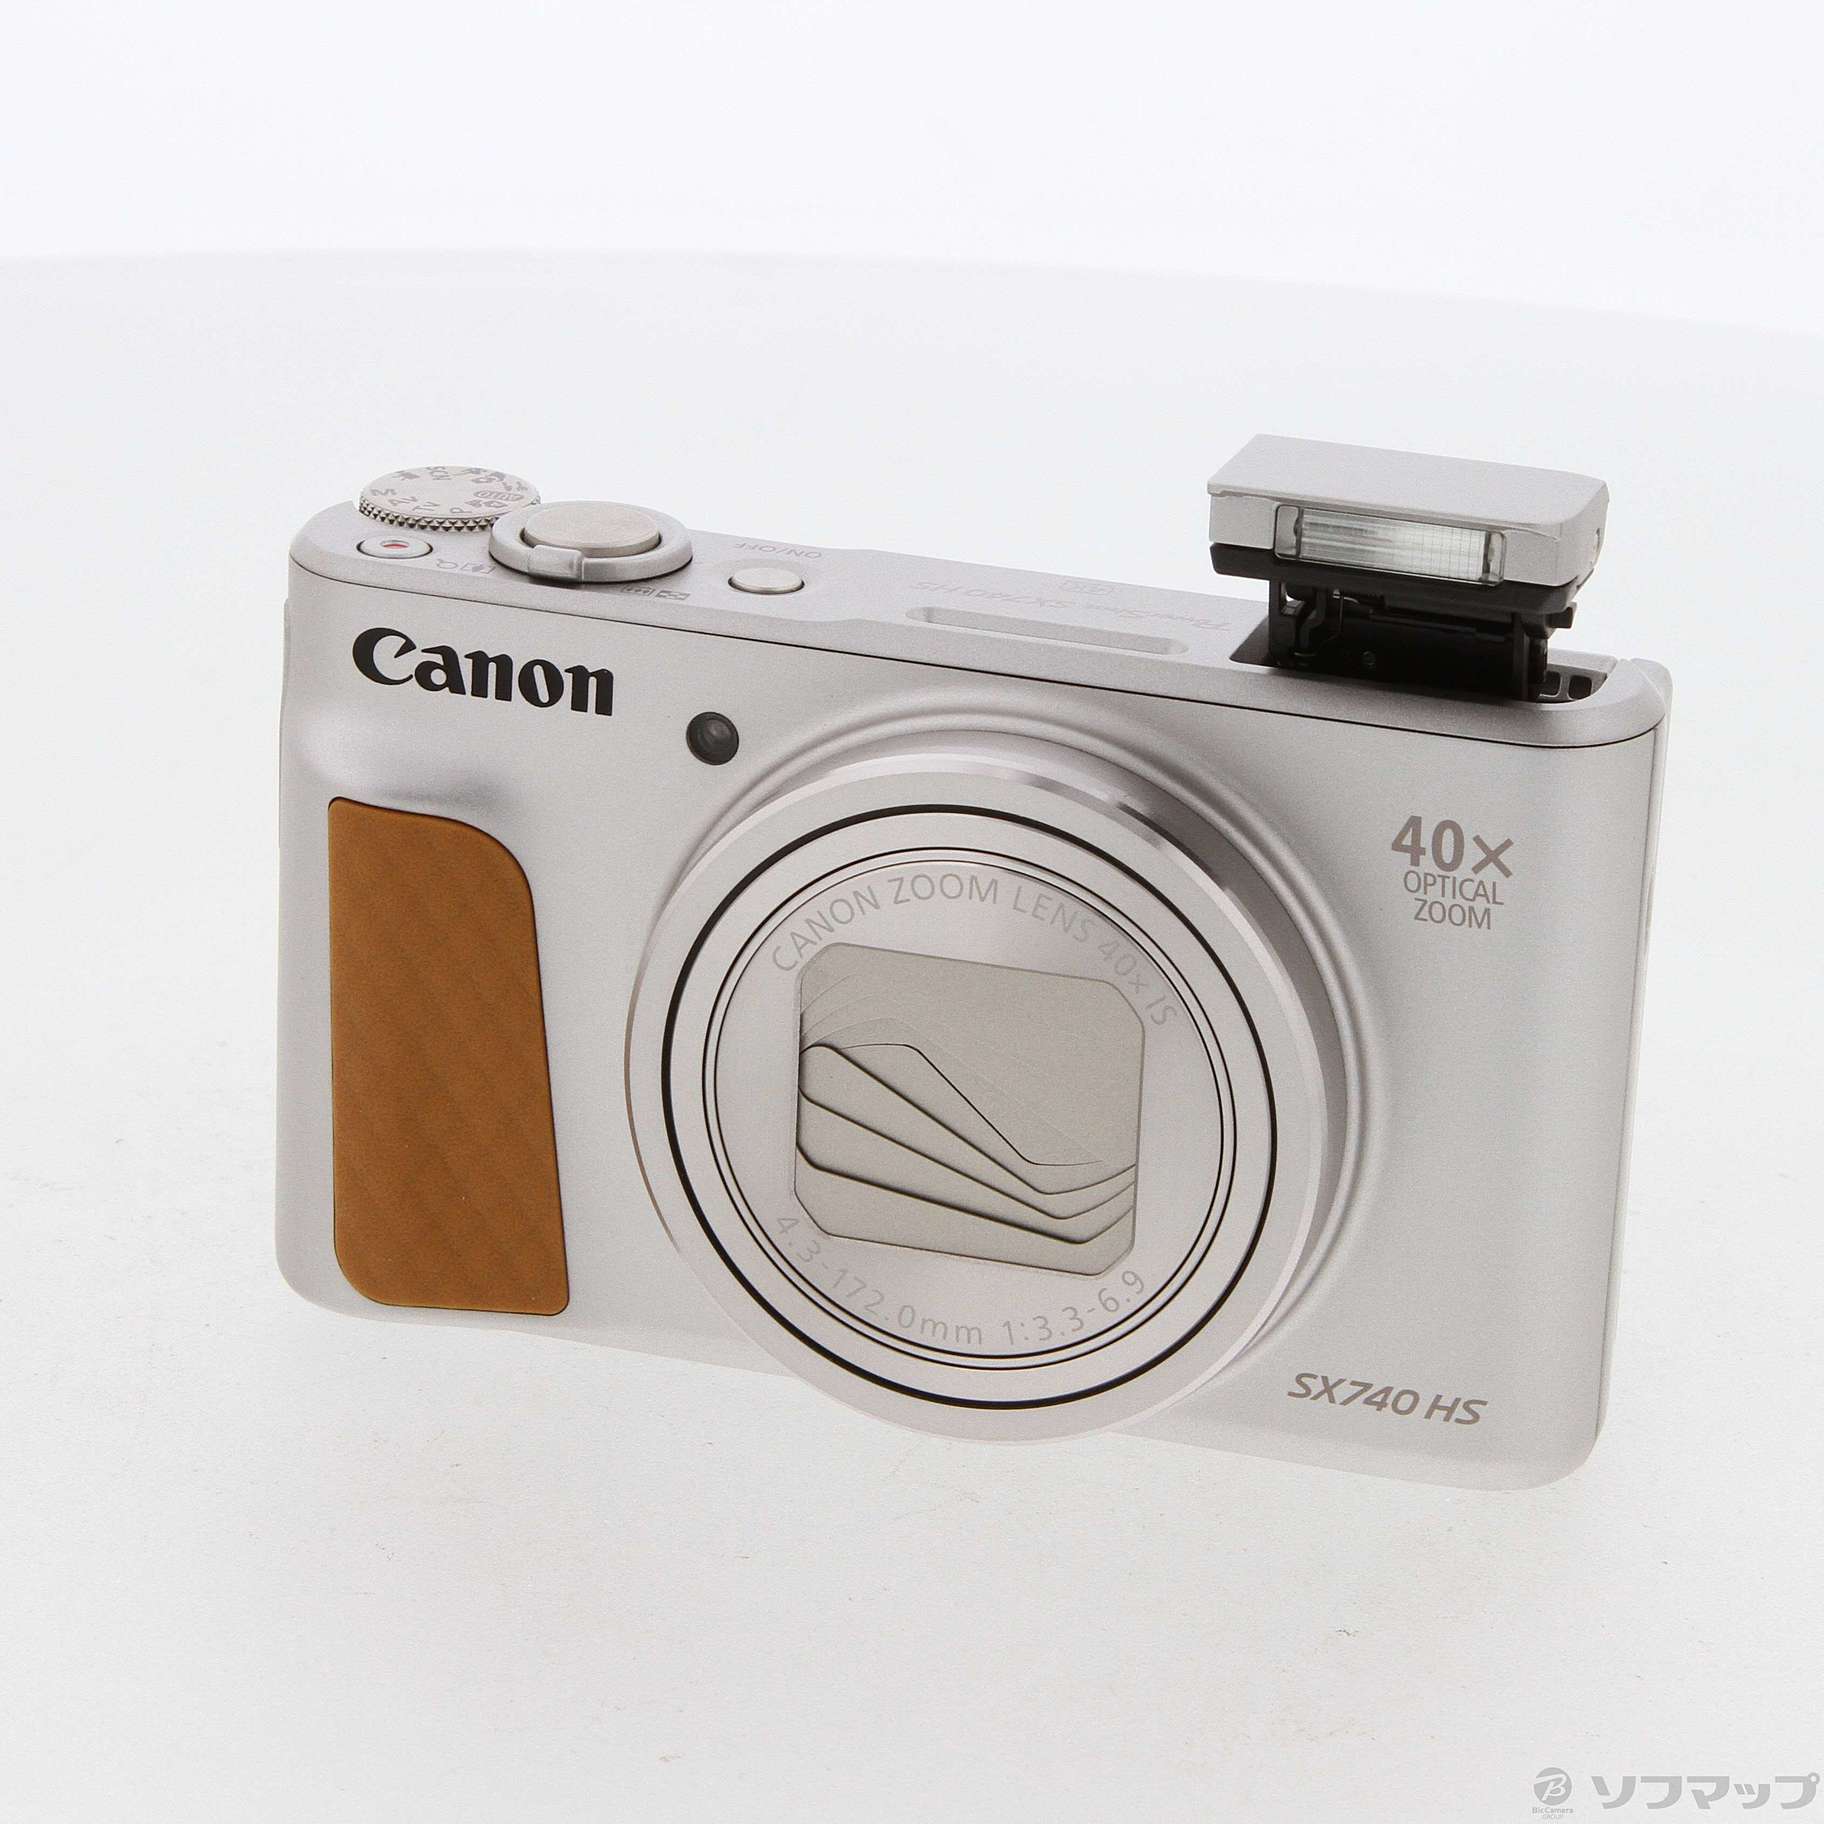 Canon PowerShot SX740 HS シルバー SDカードつき - デジタルカメラ